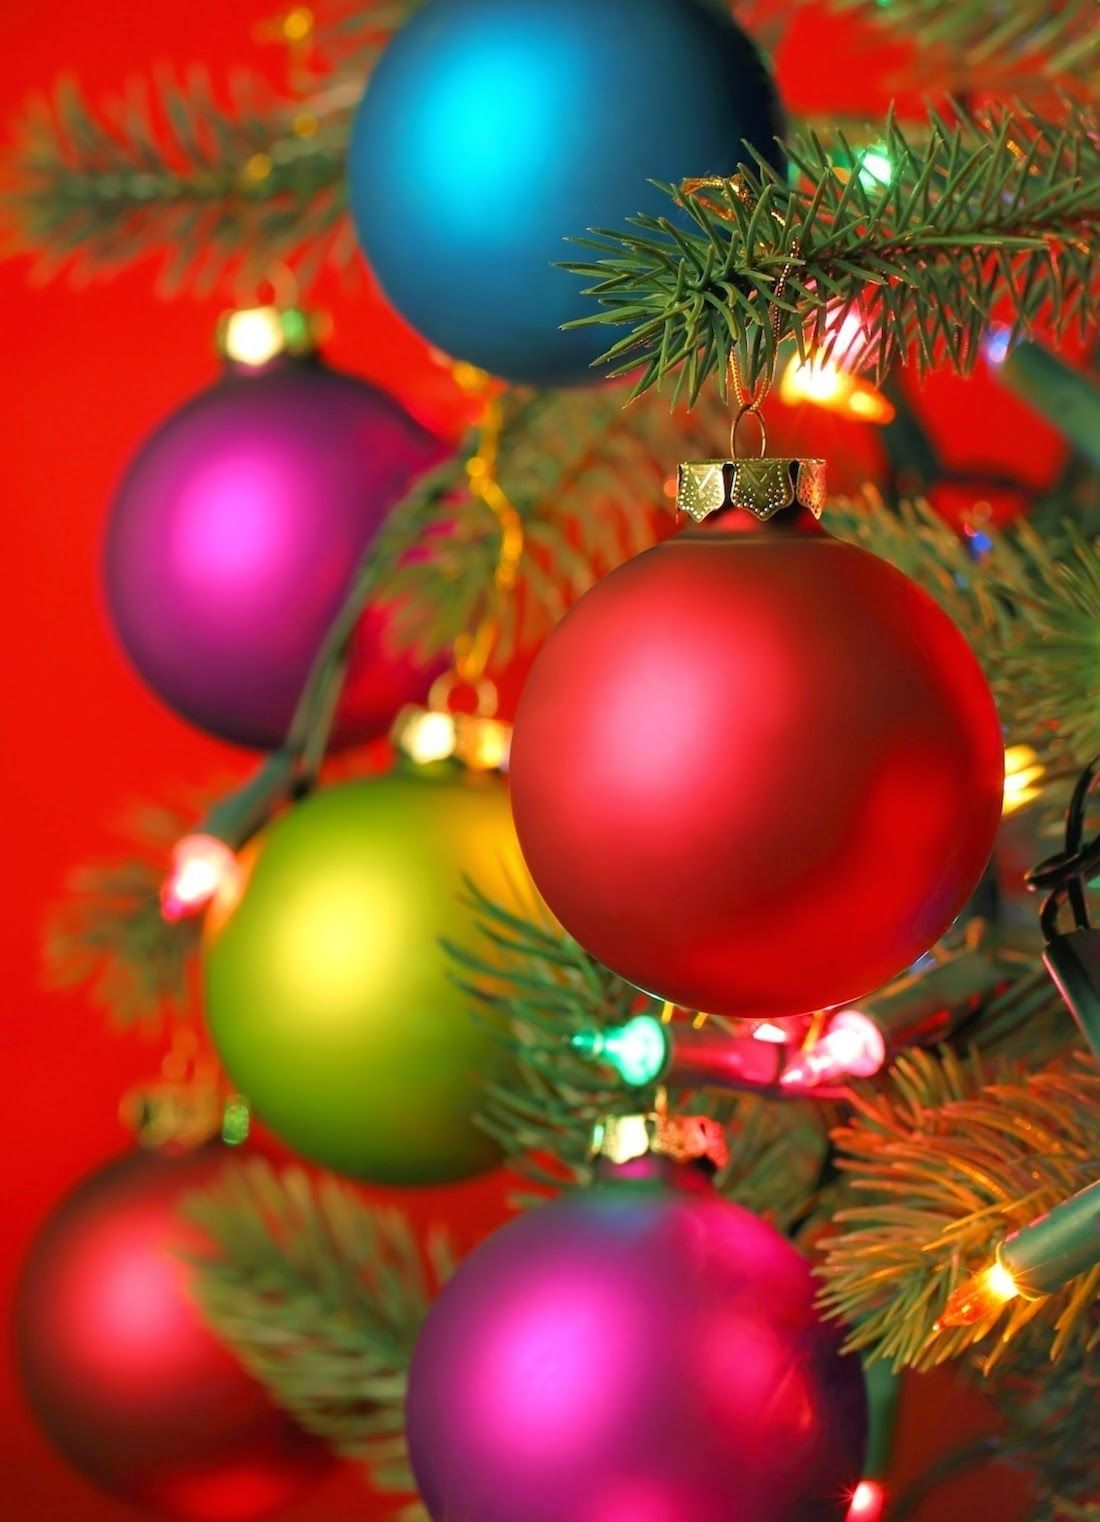 Colorful Christmas Ornaments on Tree. Christmas live wallpaper, Christmas wallpaper, Christmas decorations